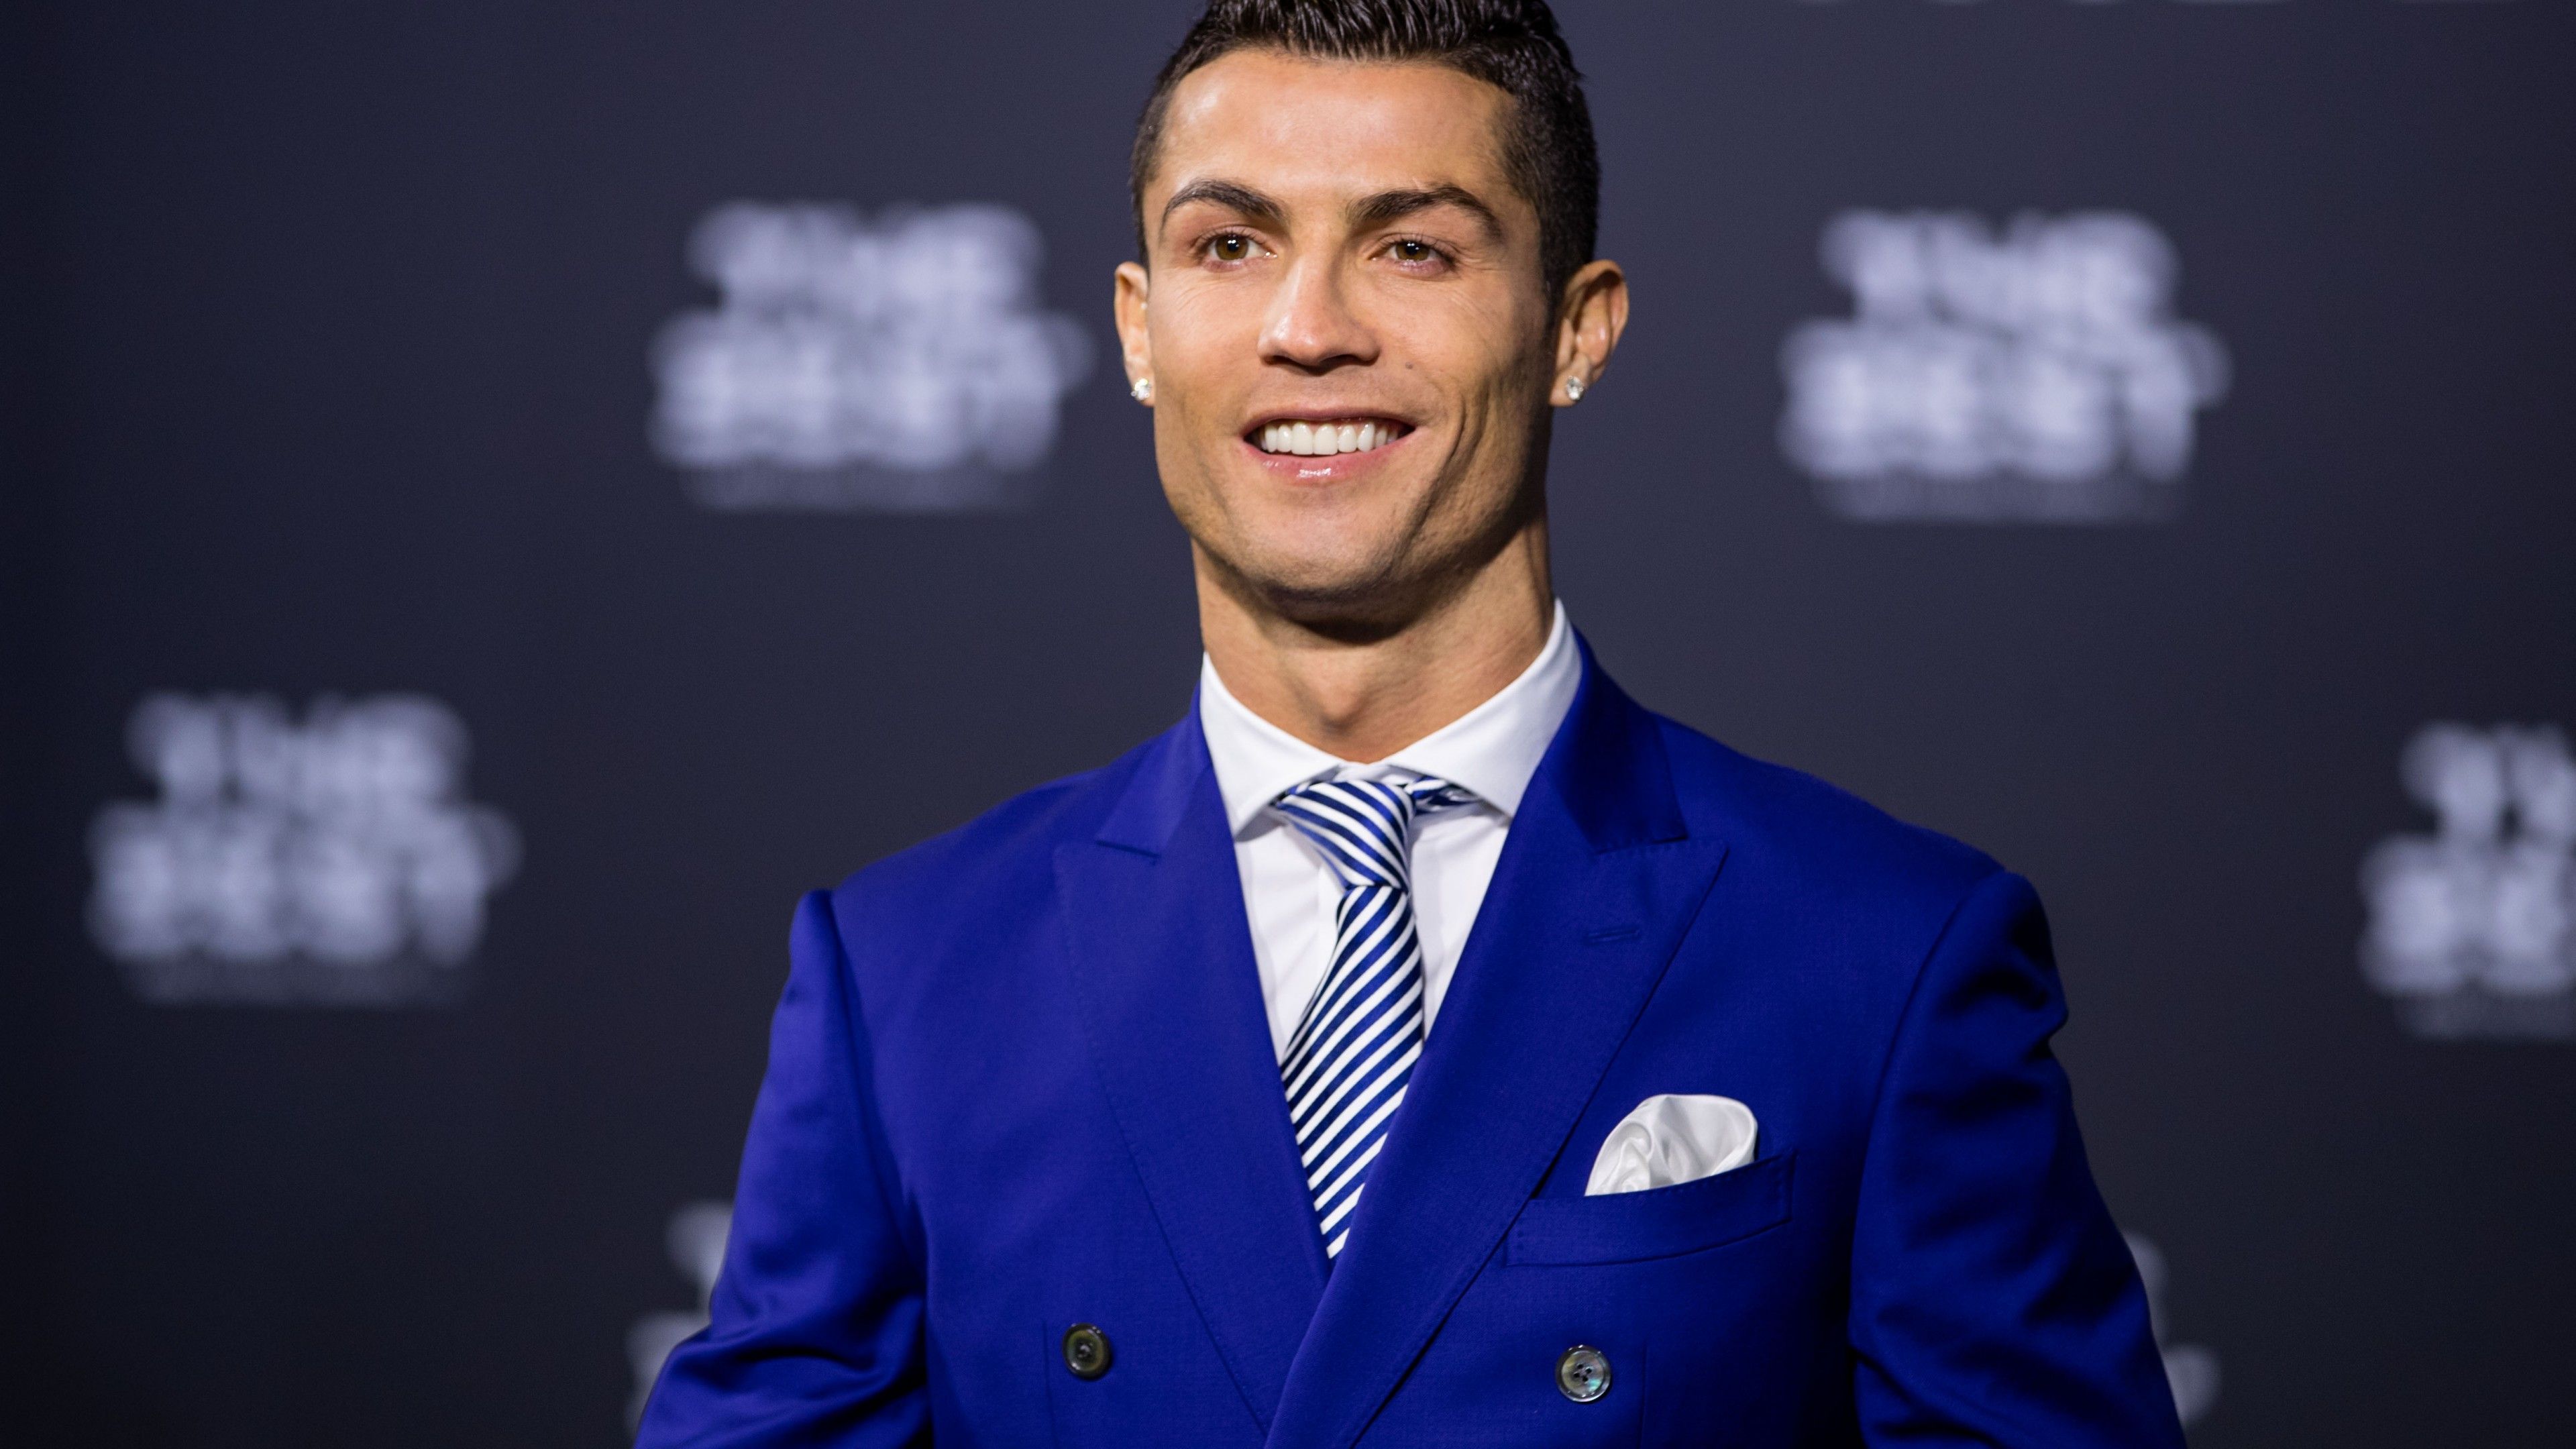 Hình nền Ronaldo: Hãy cùng thưởng thức hình nền đầy nam tính của siêu sao bóng đá Cristiano Ronaldo! Với những đường nét sắc sảo và màu sắc rực rỡ, bạn sẽ không thể rời mắt khỏi điện thoại hay máy tính của mình.